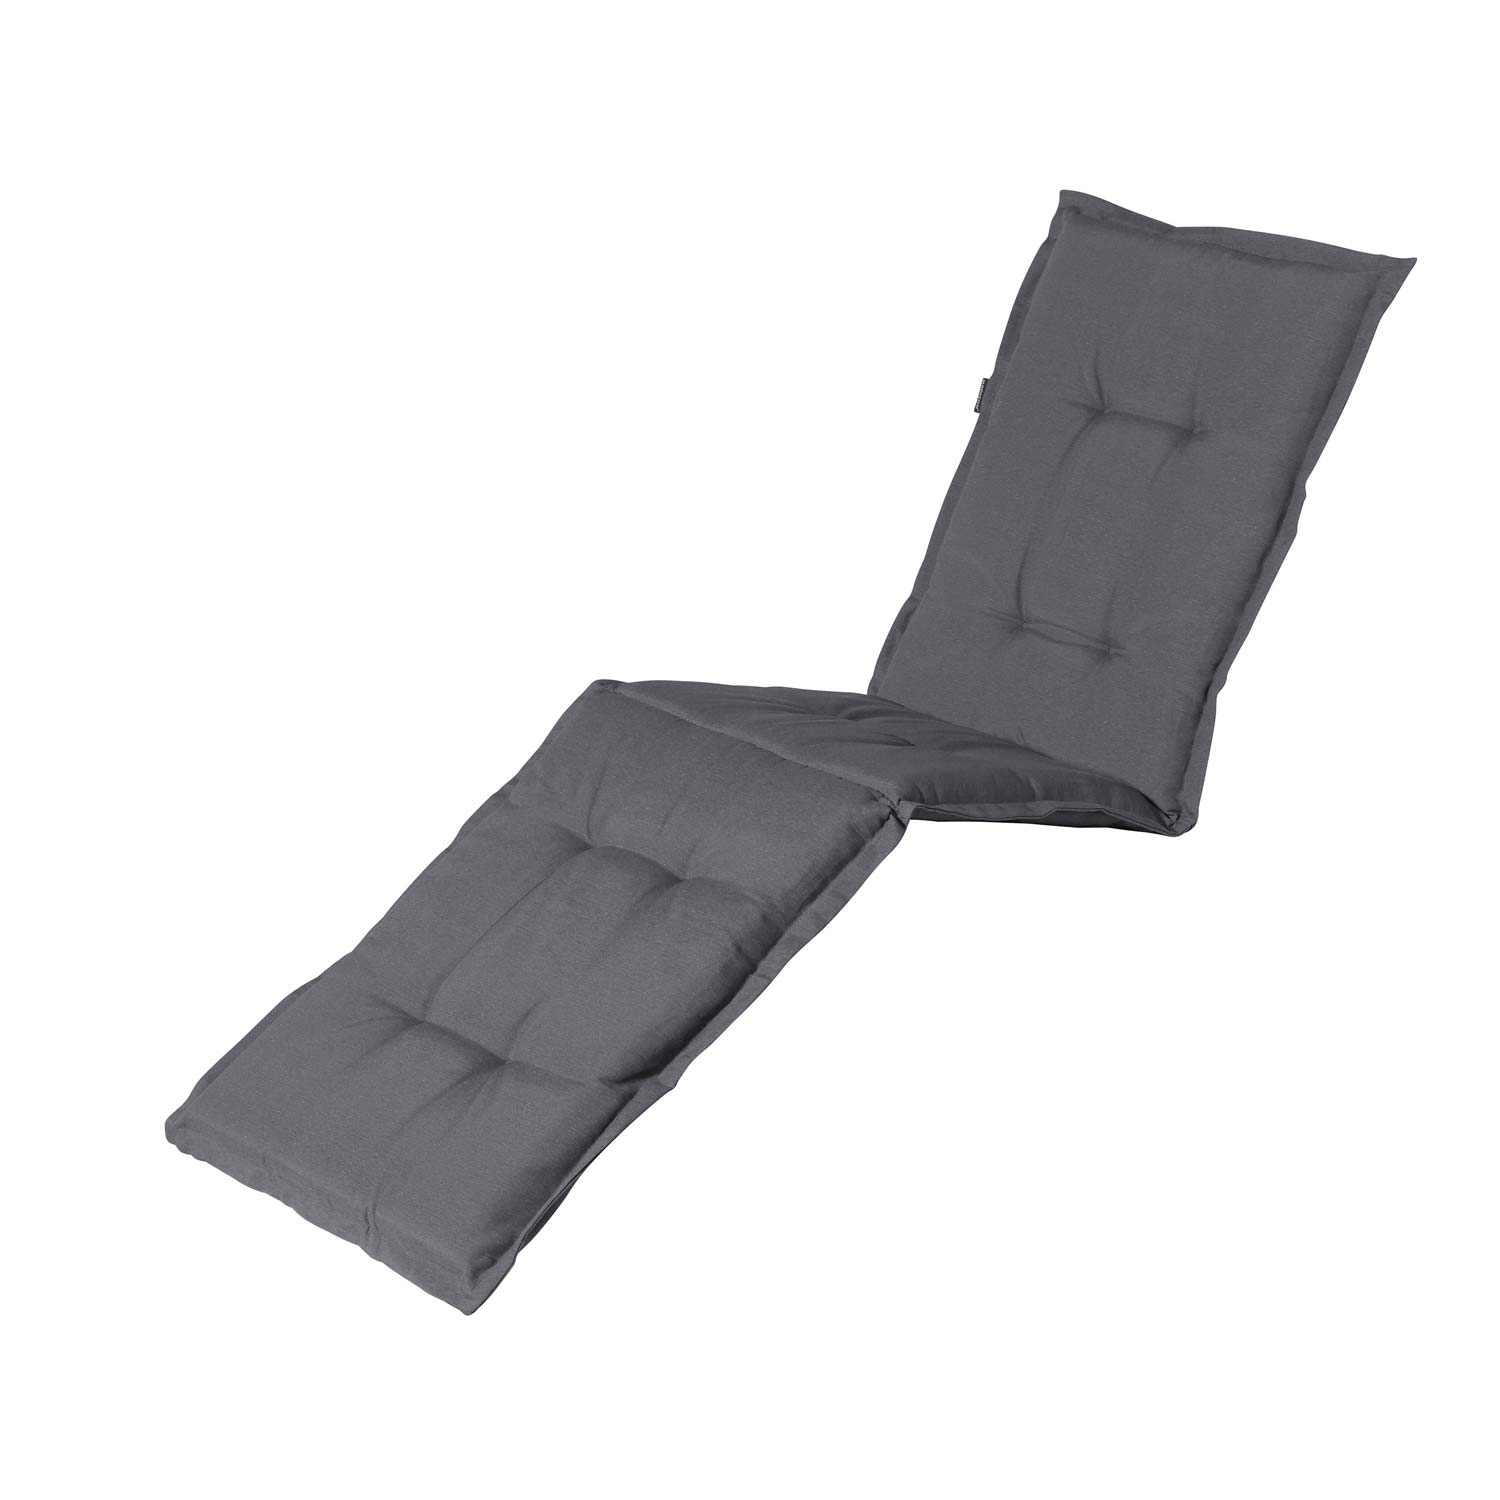 Auflage Deckchair - Panama Grau